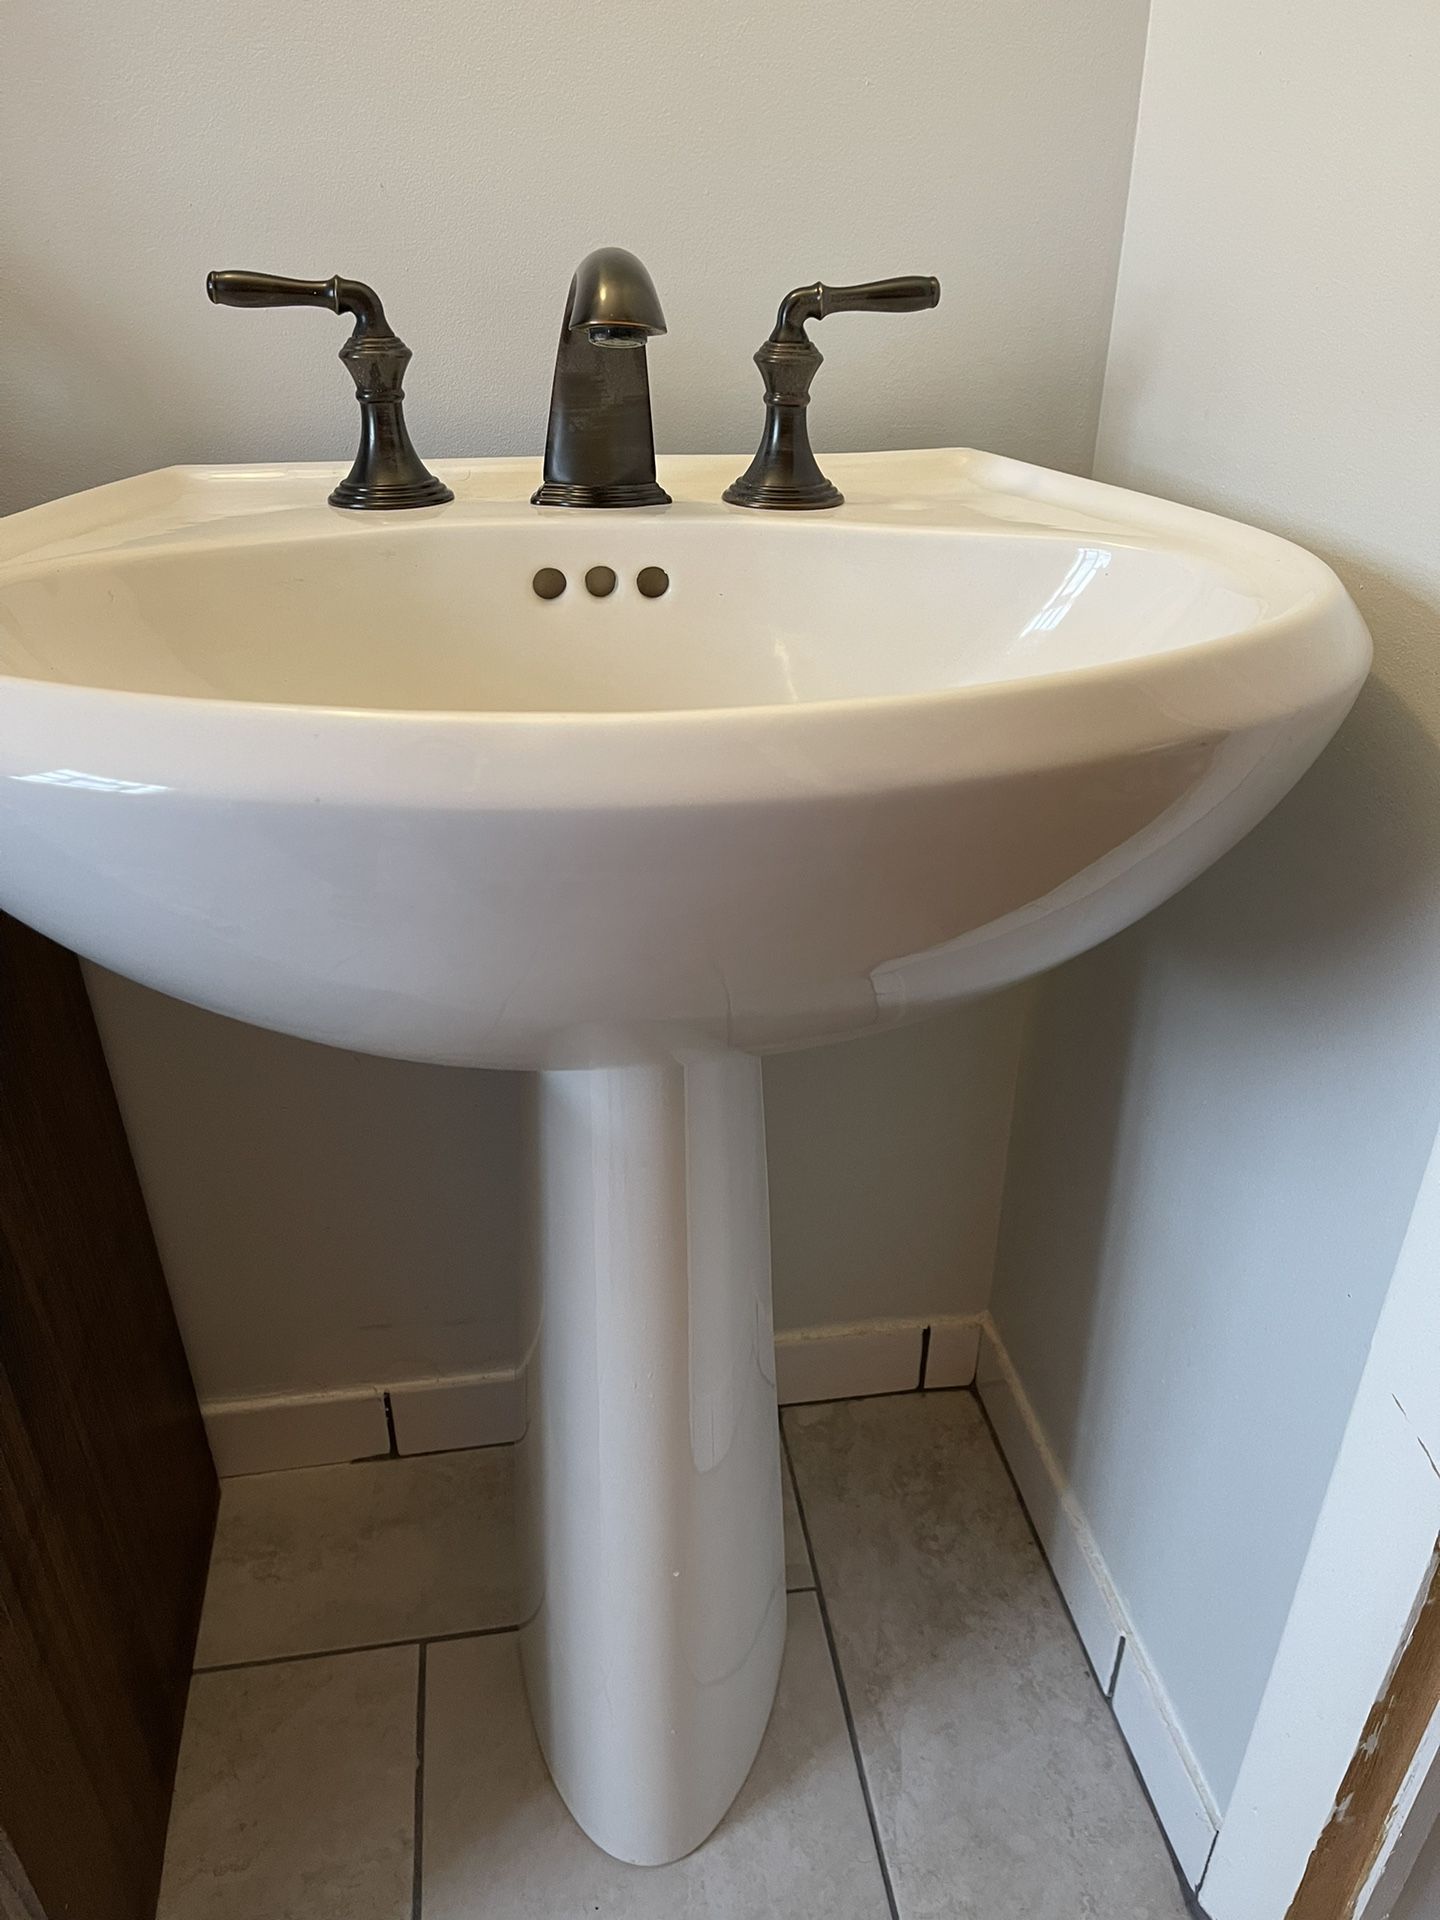 Kohler Pedestal Sink And Bathroom Faucet 